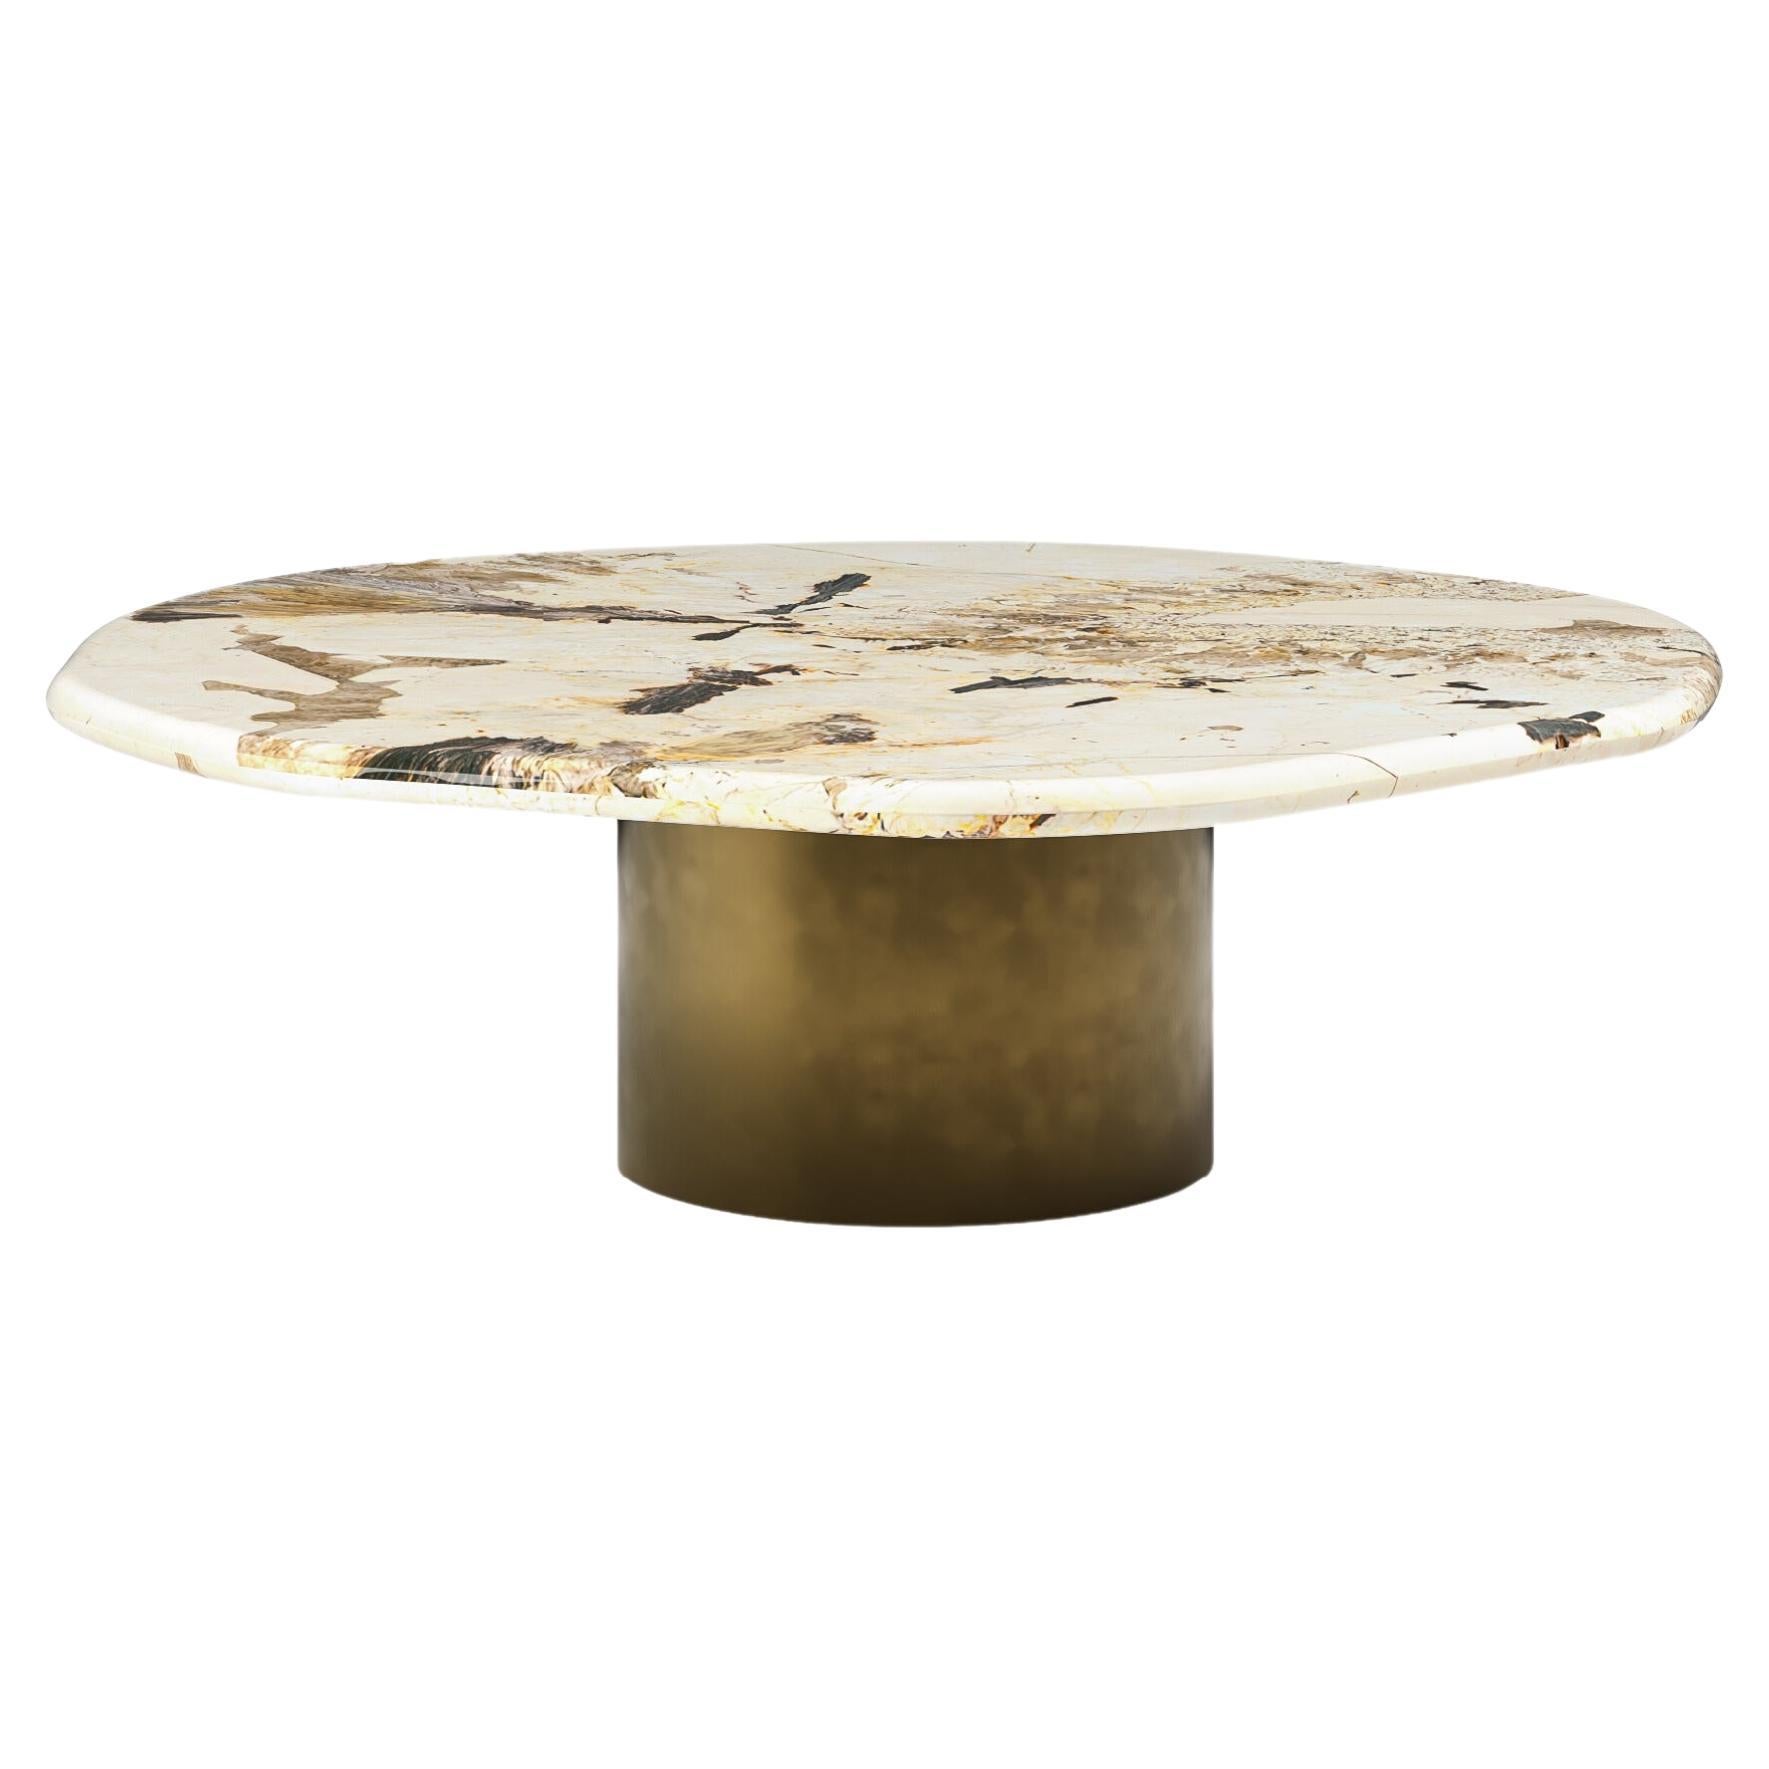 FORM(LA) table basse ronde Lago 60 L x 60 W x 14 H quartzite et bronze antique